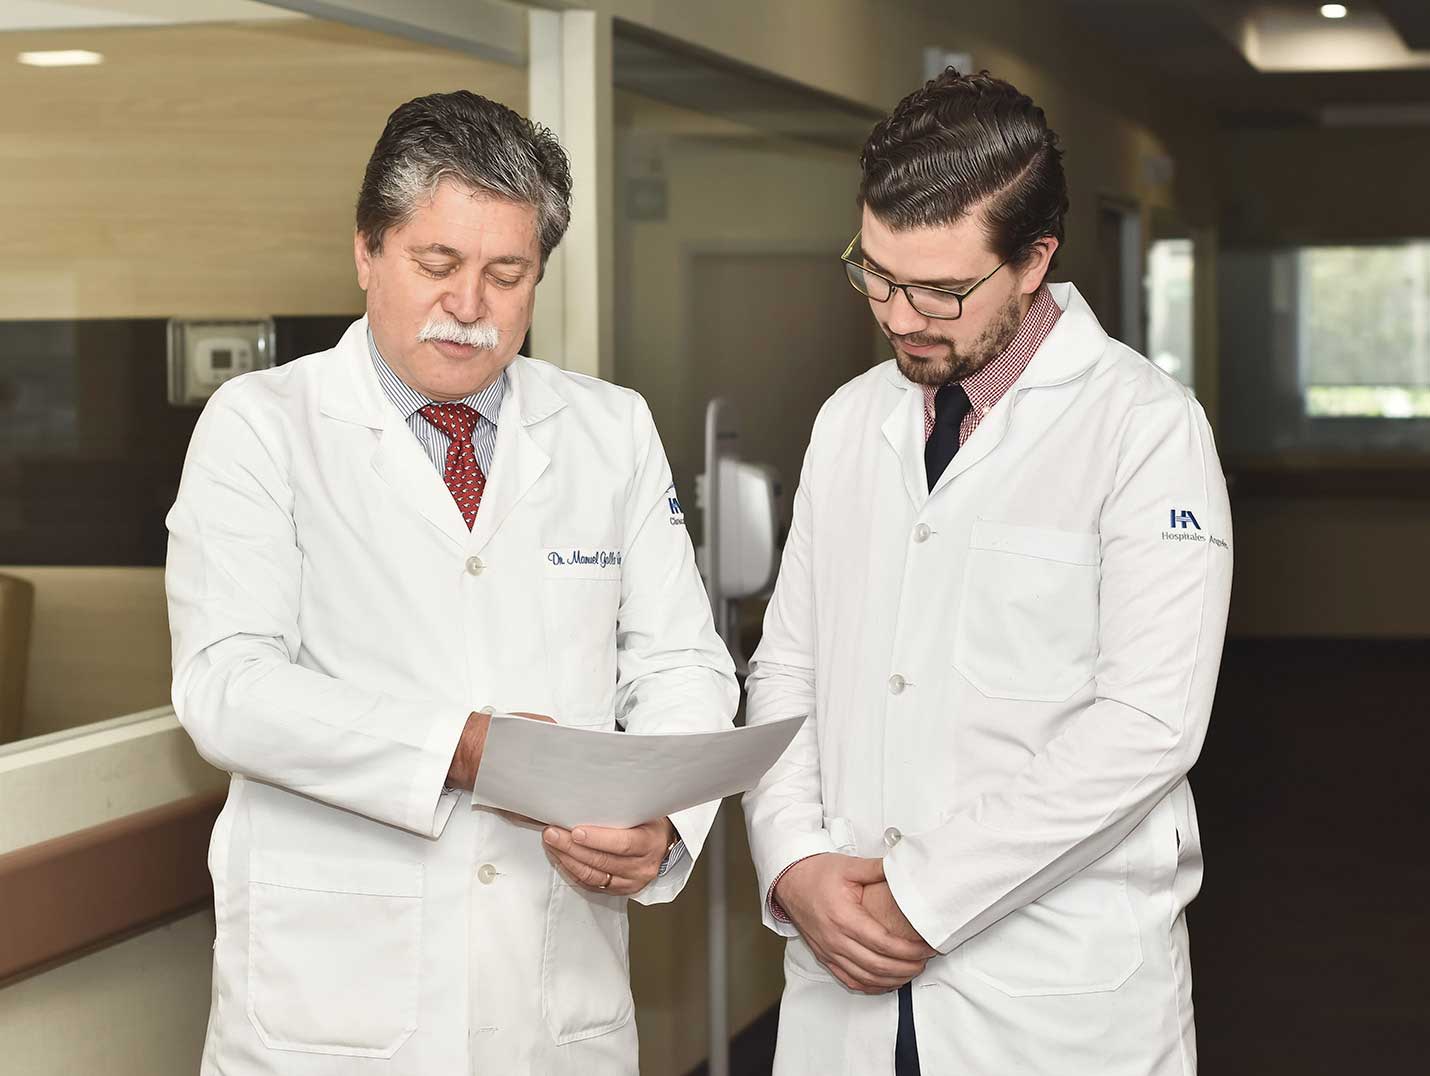 Dos médicos de Hospital Angeles con batas blancas, viendo detenidamente unos documentos que uno de ellos tiene en sus manos